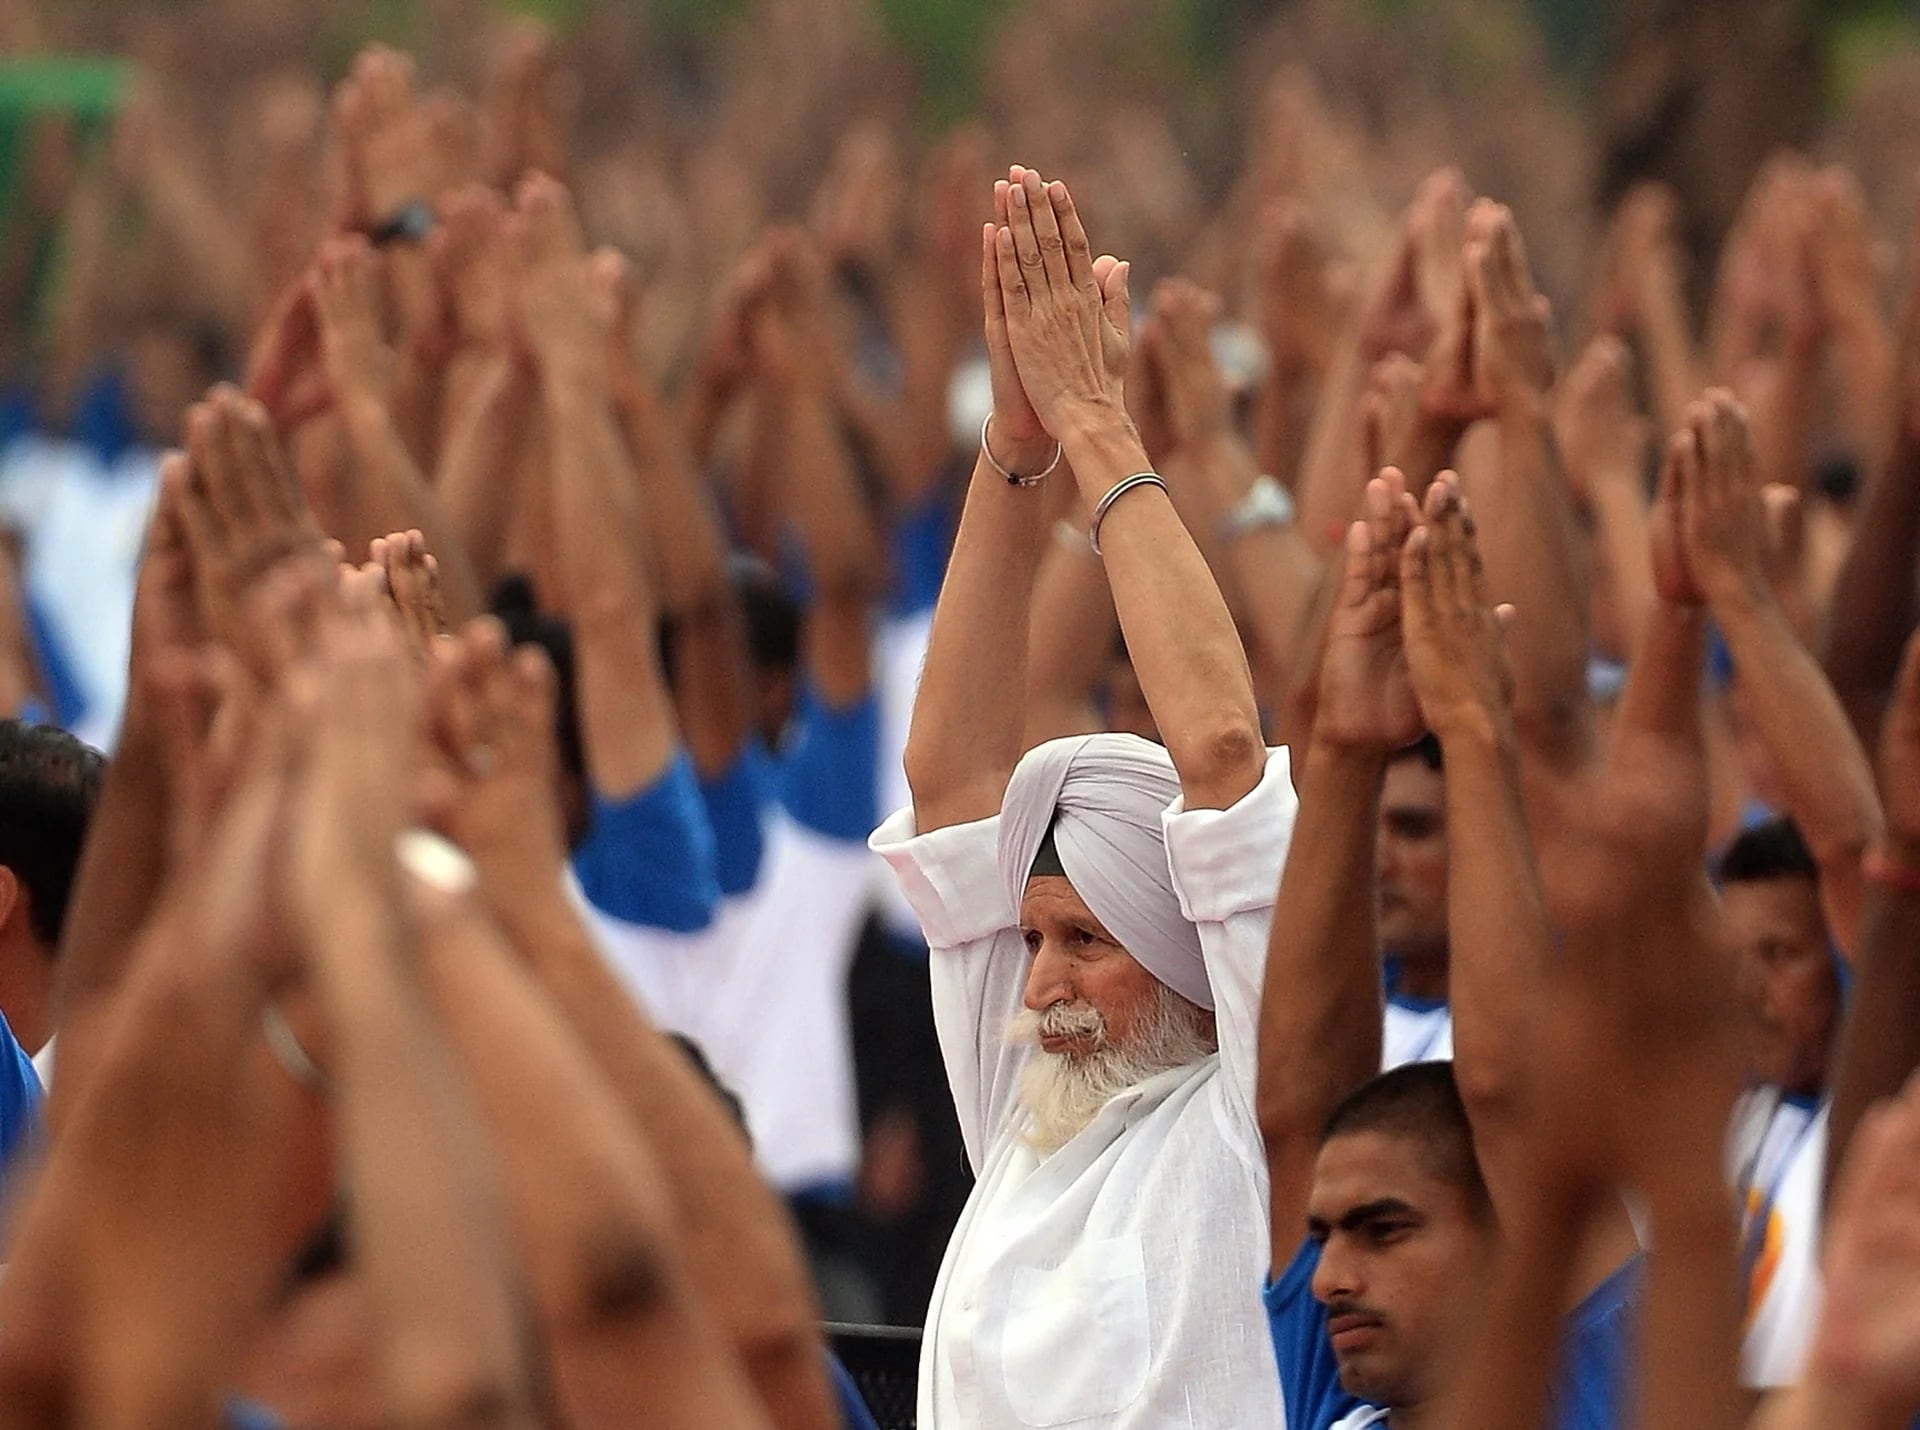 El día internacional del yoga se celebra con clases colectivas en diferentes ciudades del mundo (AFP)